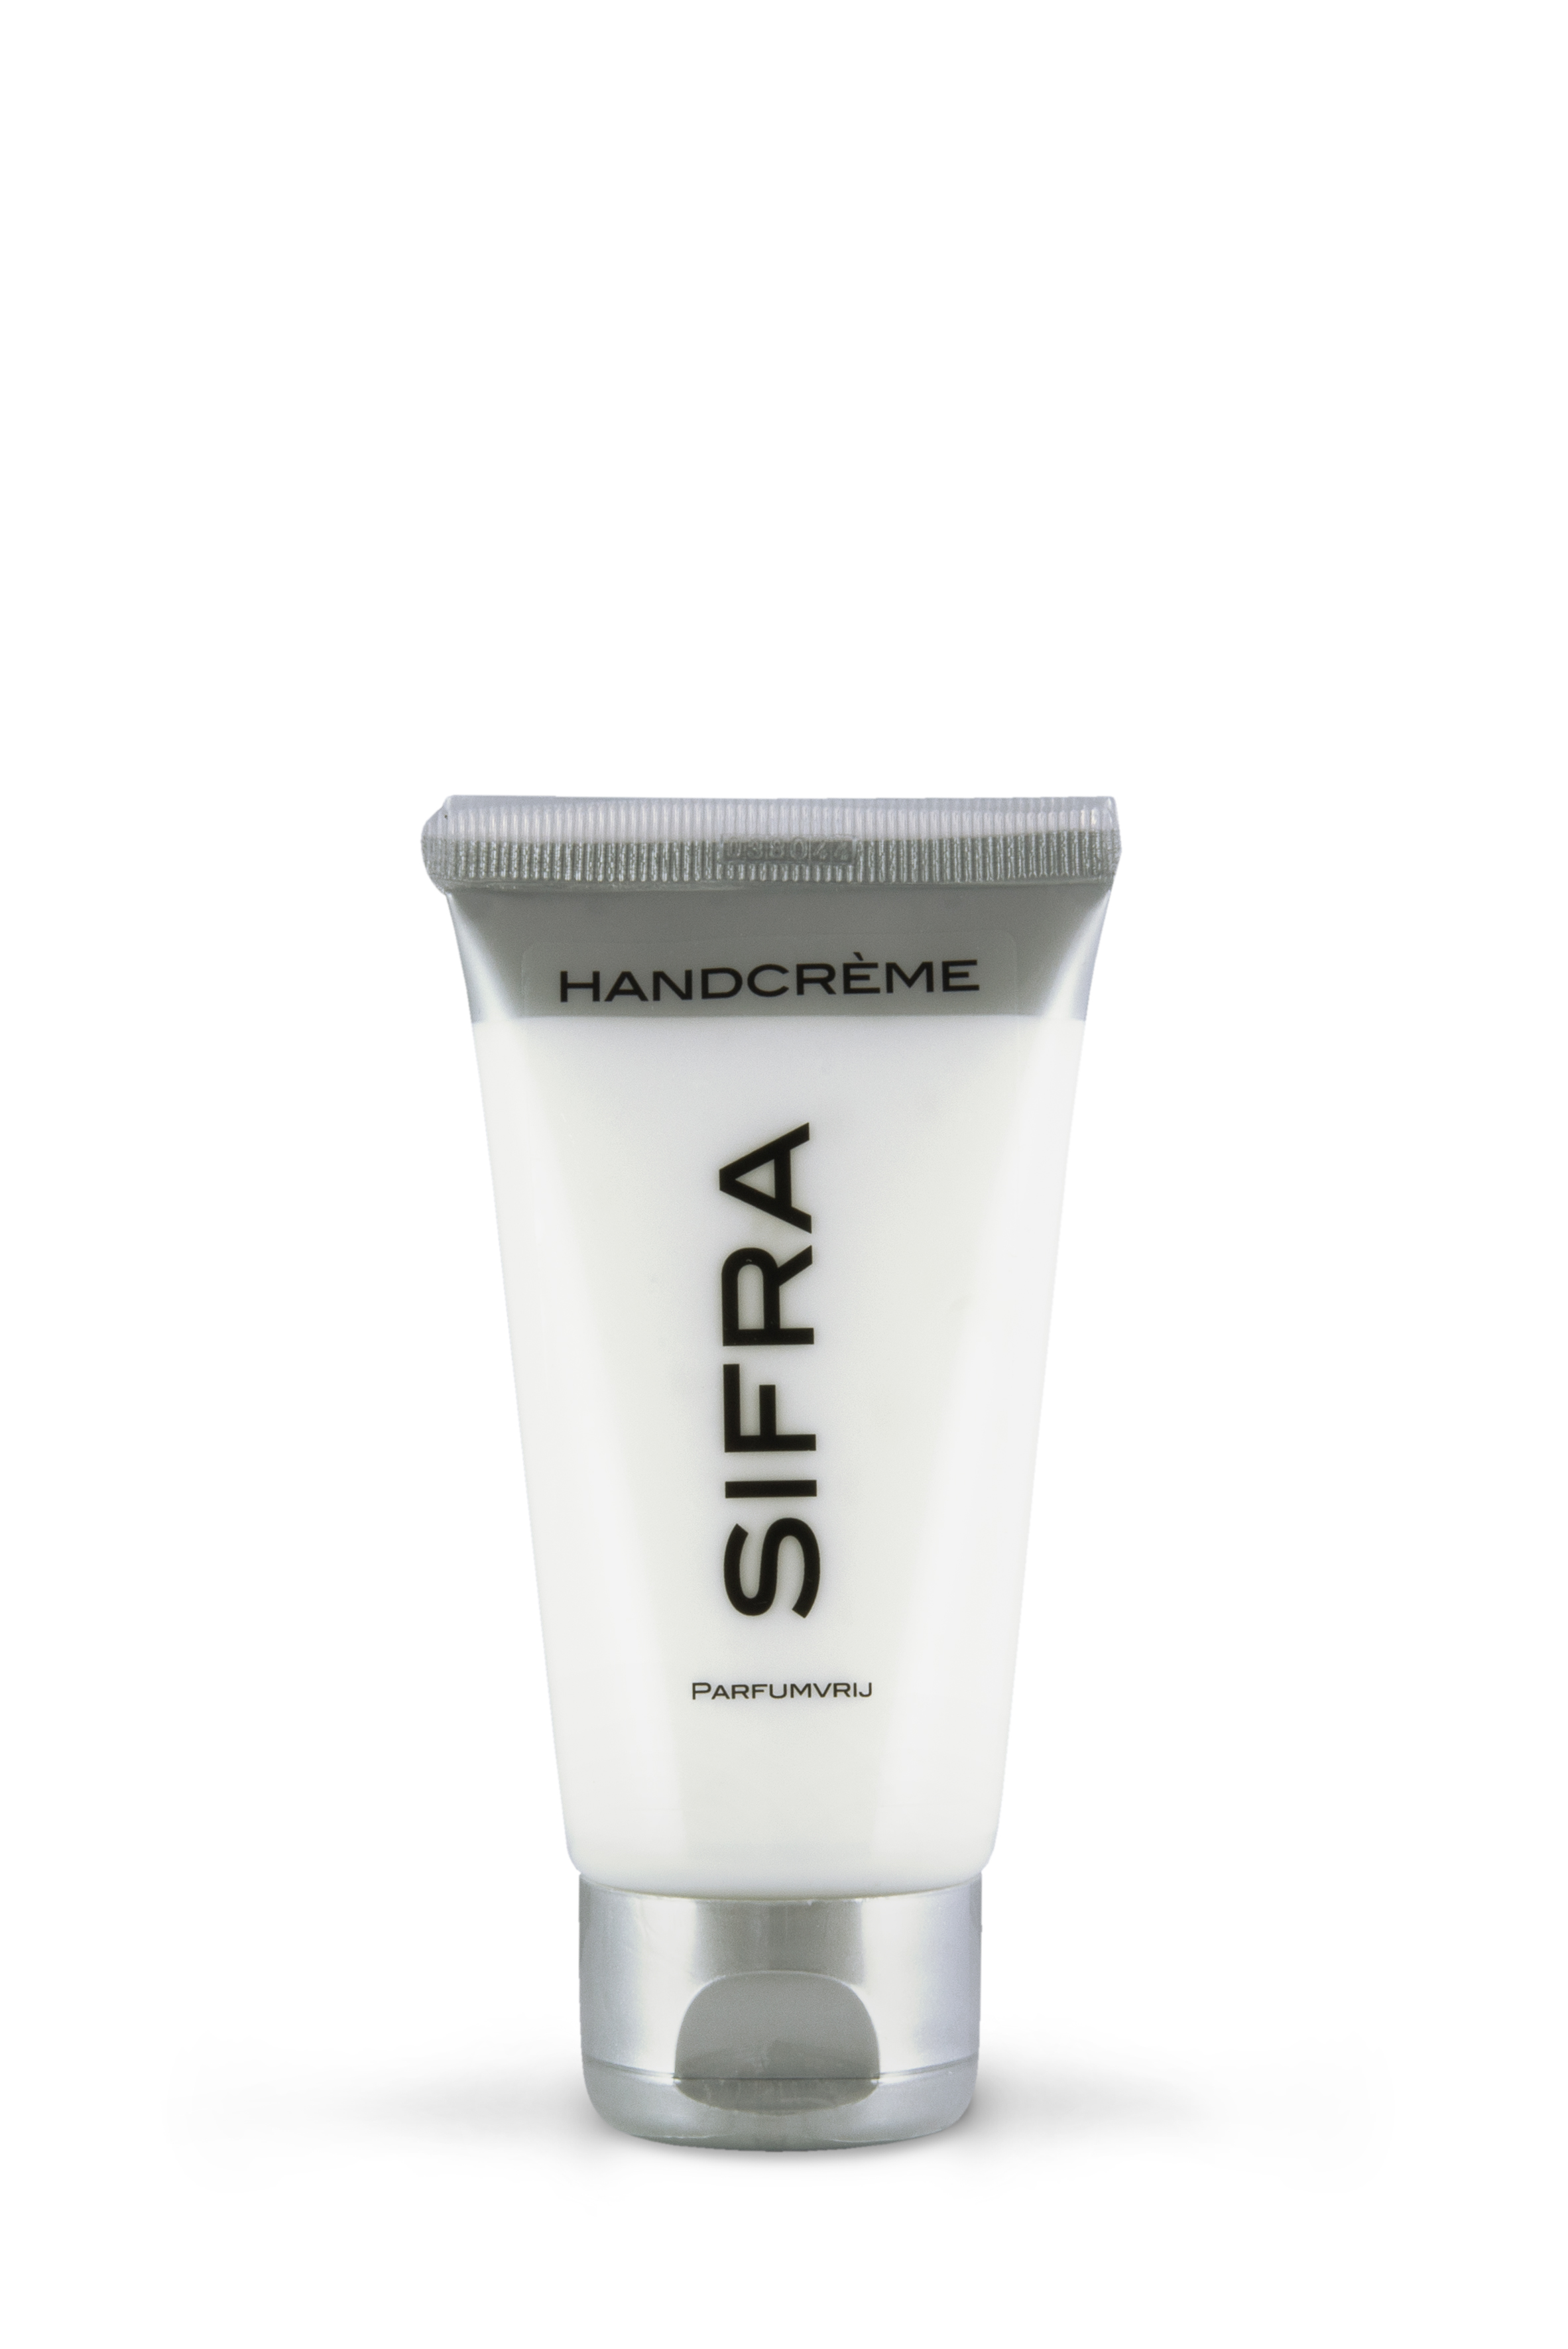 stap Relatie Inzichtelijk Handcrème parfumvrij - Sifra Beauty Products